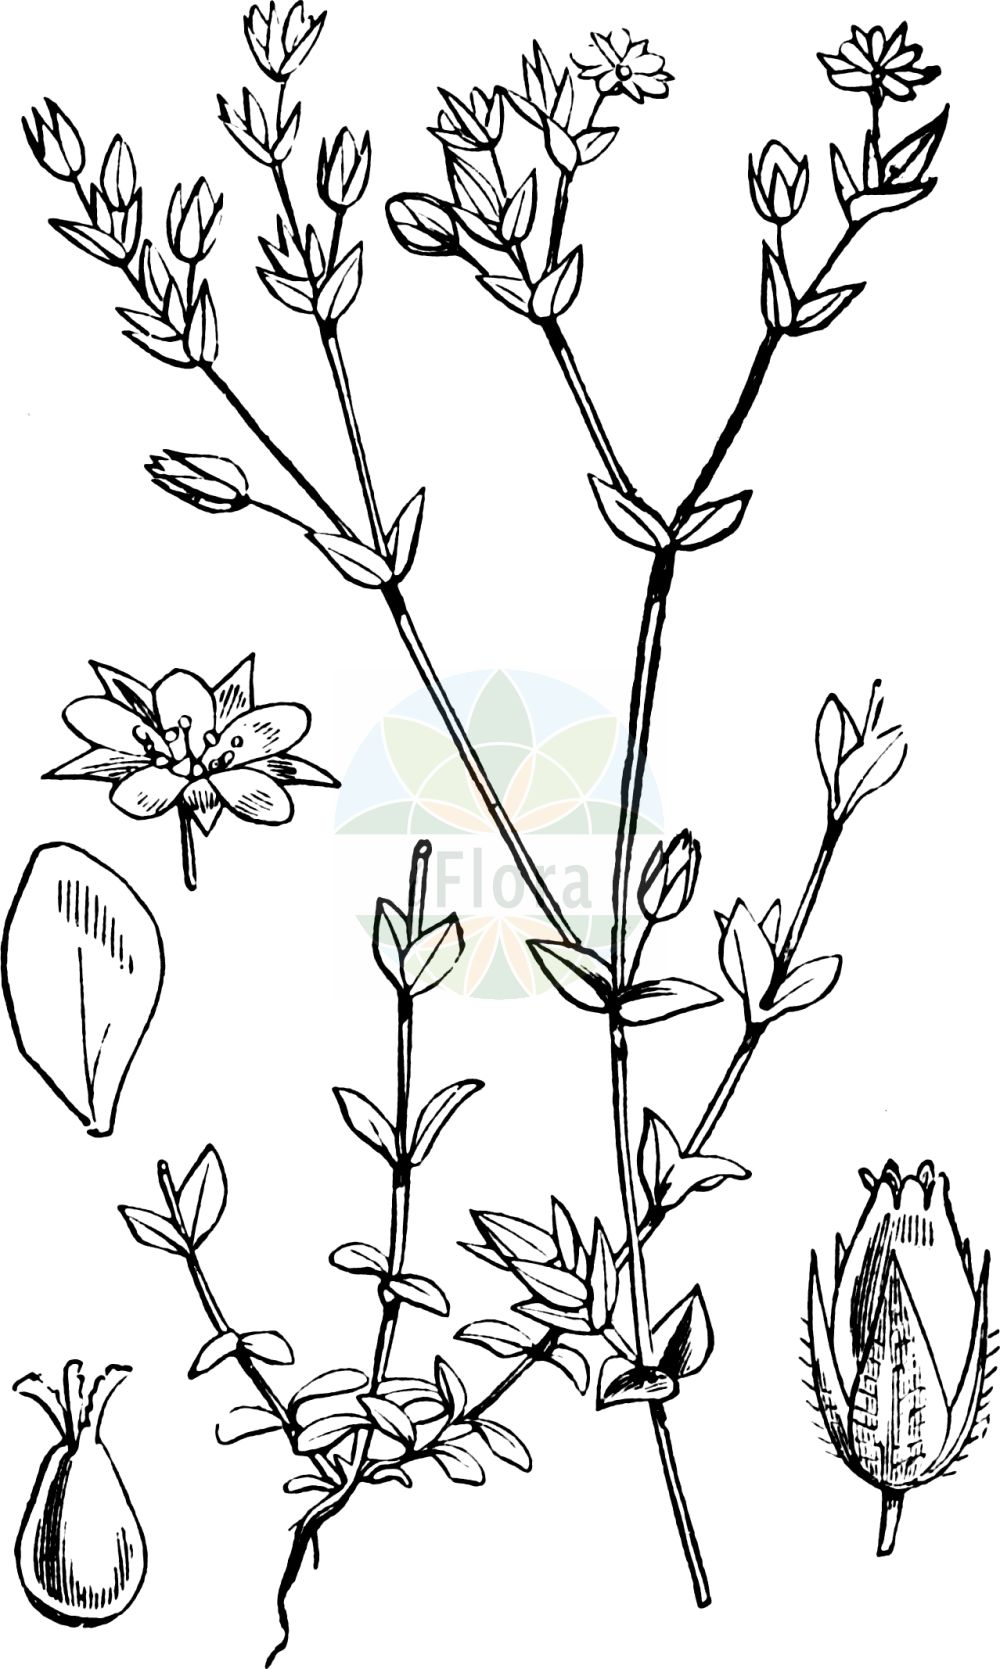 Historische Abbildung von Arenaria serpyllifolia (Quendel-Sandkraut - Thyme-leaved Sandwort). Das Bild zeigt Blatt, Bluete, Frucht und Same. ---- Historical Drawing of Arenaria serpyllifolia (Quendel-Sandkraut - Thyme-leaved Sandwort). The image is showing leaf, flower, fruit and seed.(Arenaria serpyllifolia,Quendel-Sandkraut,Thyme-leaved Sandwort,Arenaria lloydii,Arenaria serpyllifolia,Arenaria serpyllifolia L. subsp.,Arenaria viscida,Minuartia olonensis,Quendel-Sandkraut,Quendelblaettriges Sandkraut,Quendelblaettriges Sandkraut,Thyme-leaved Sandwort,Arenaria,Sandkraut,Sandwort,Caryophyllaceae,Nelkengewächse,Pink family,Blatt,Bluete,Frucht,Same,leaf,flower,fruit,seed,Fitch et al. (1880))